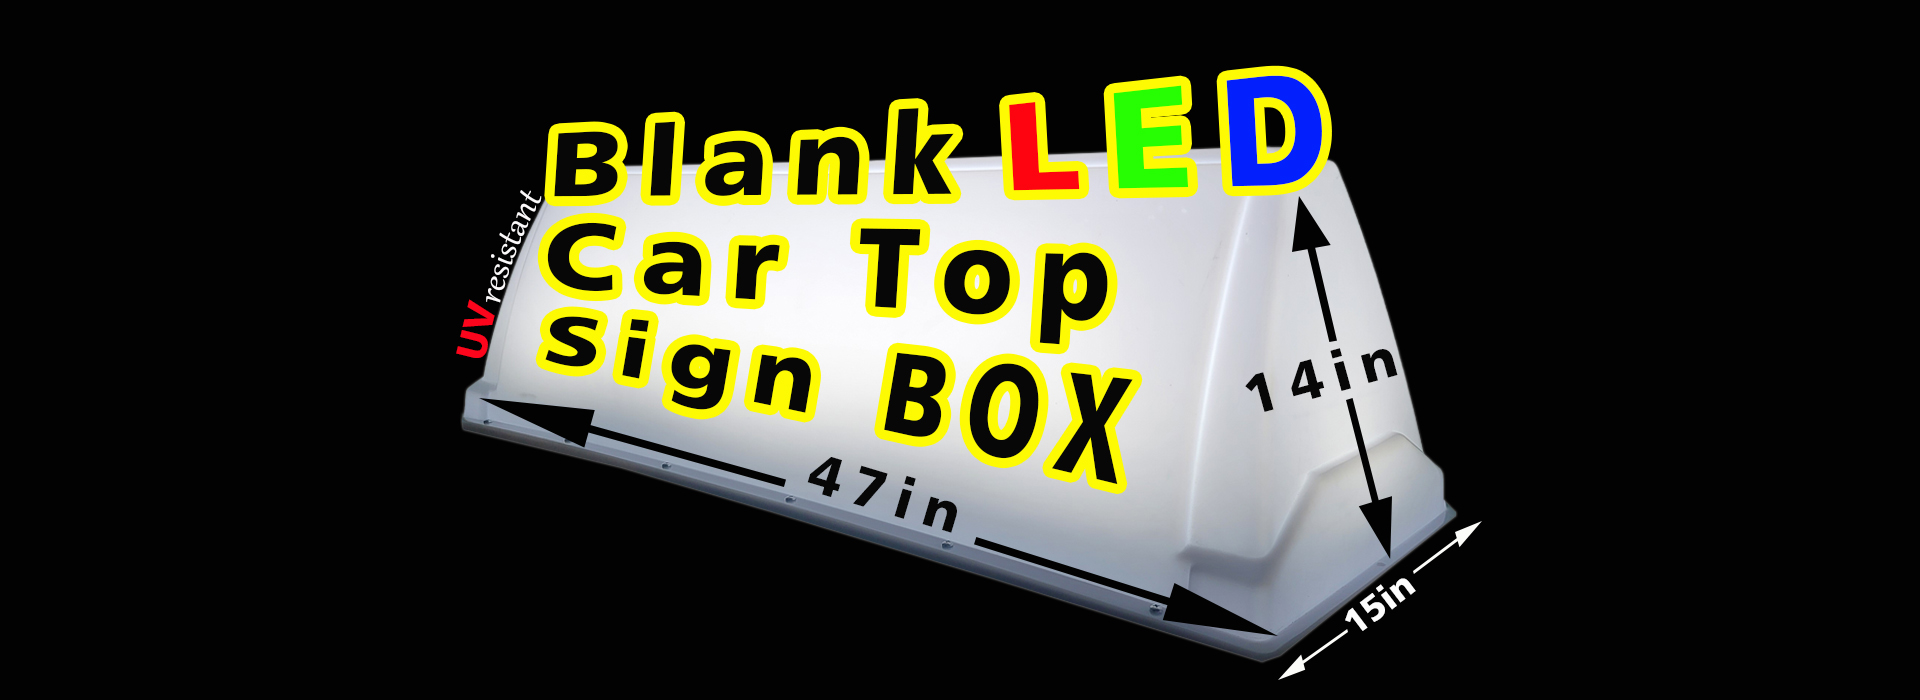 Car Top Sign Box